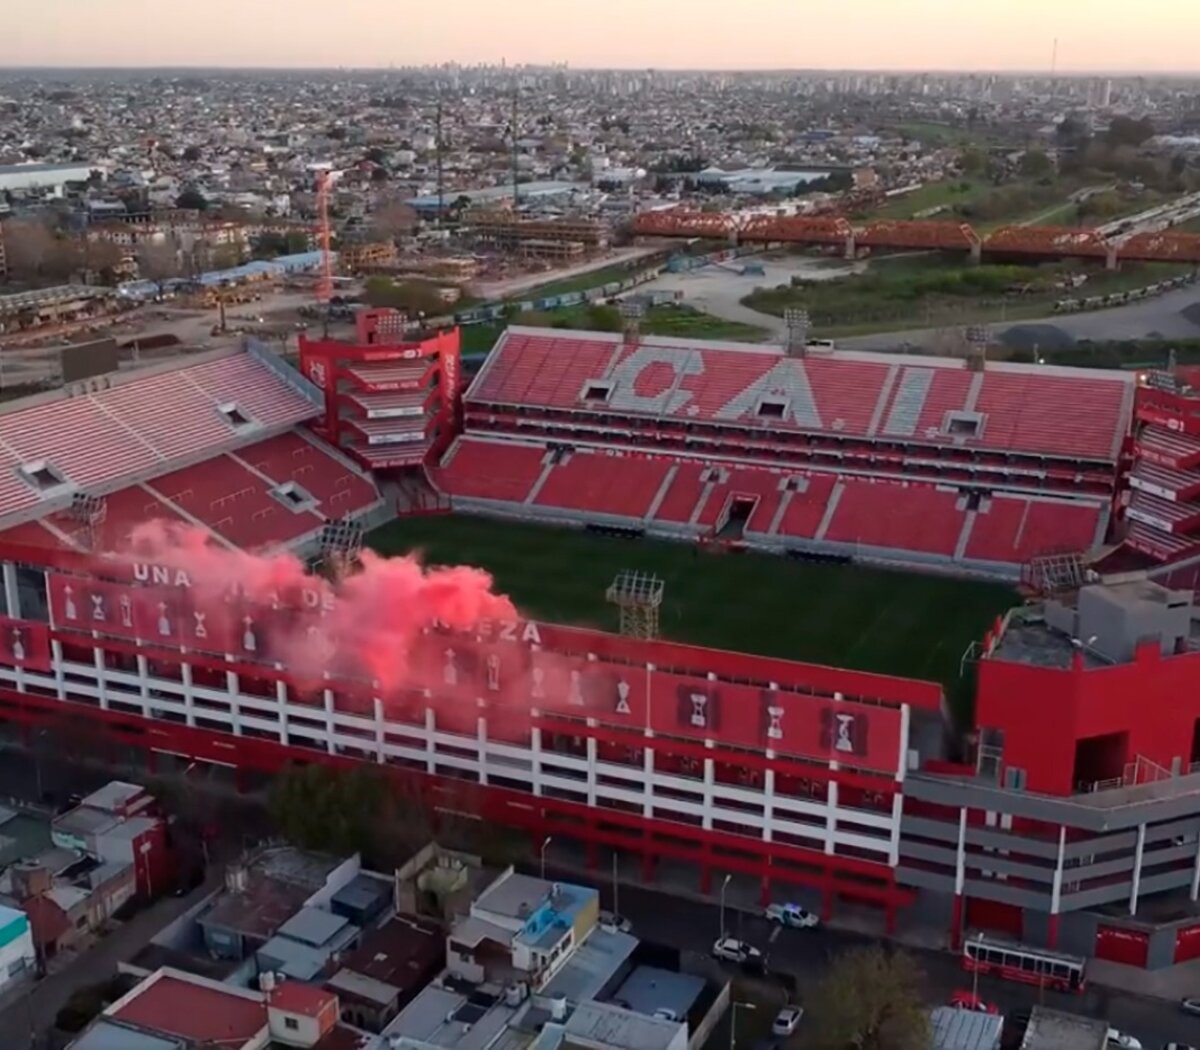 River será local en Independiente